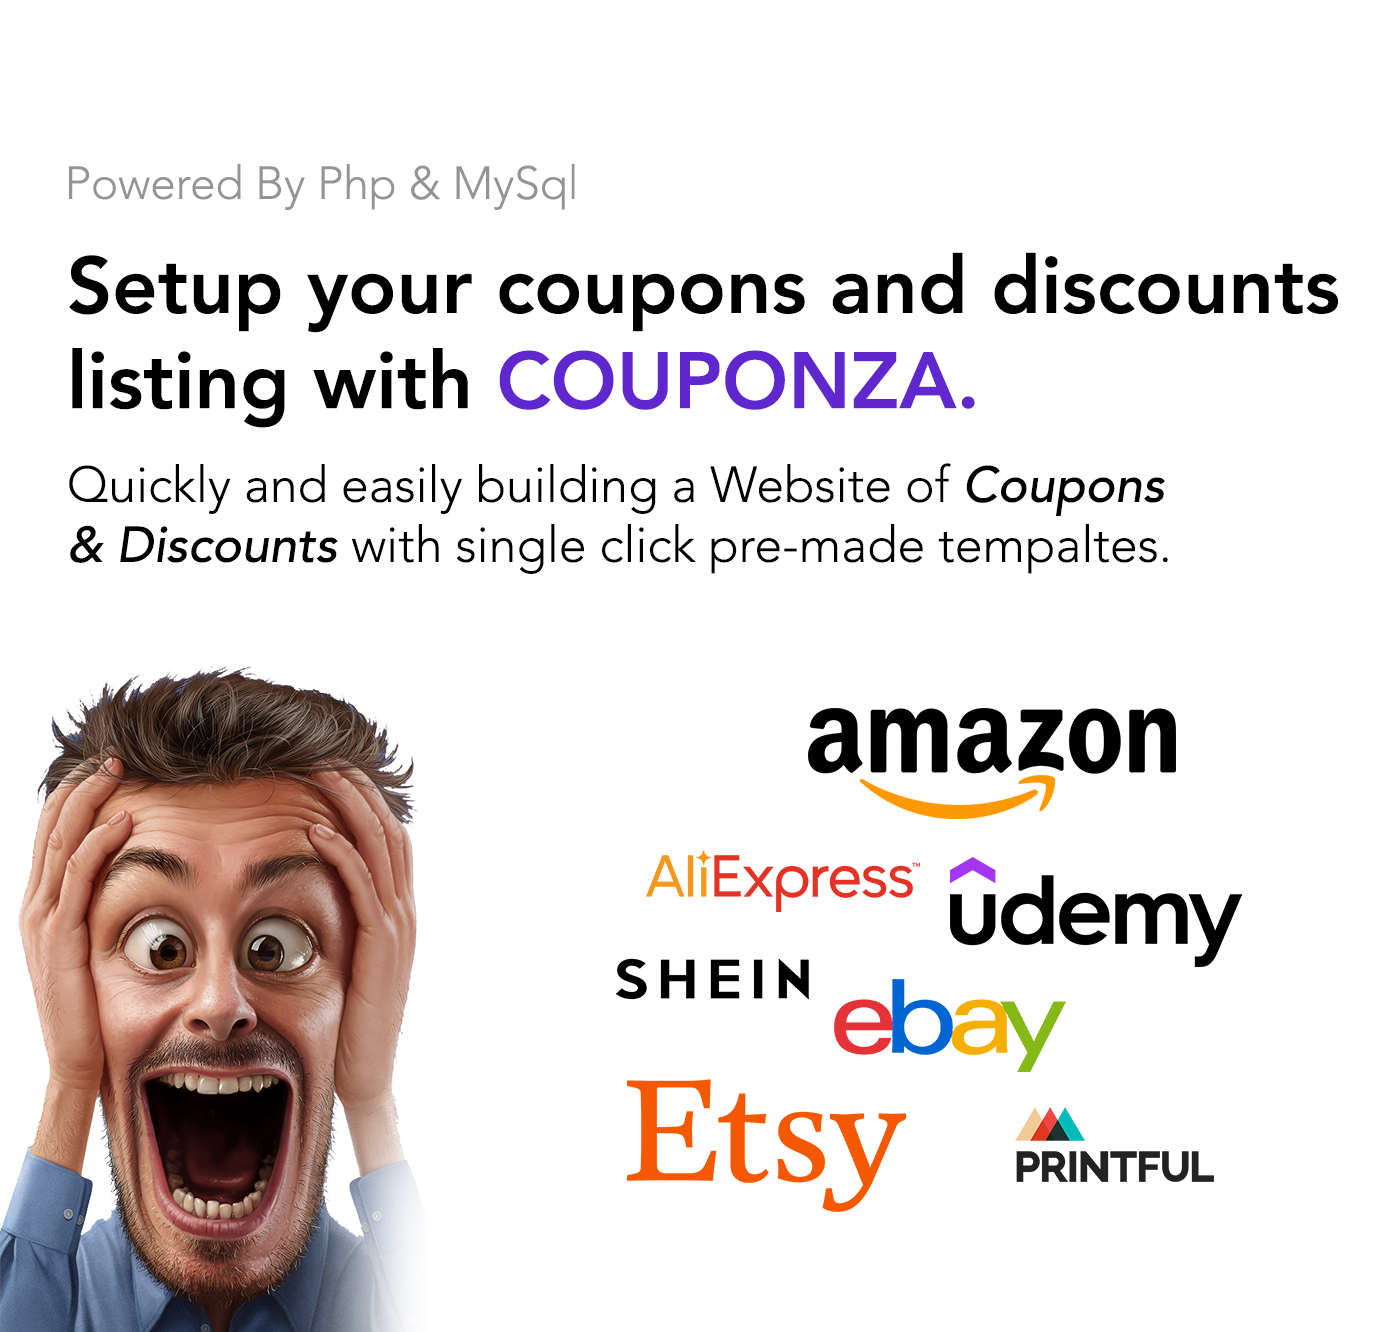 Couponza- Ultimate Coupons & Discounts Platform - 11